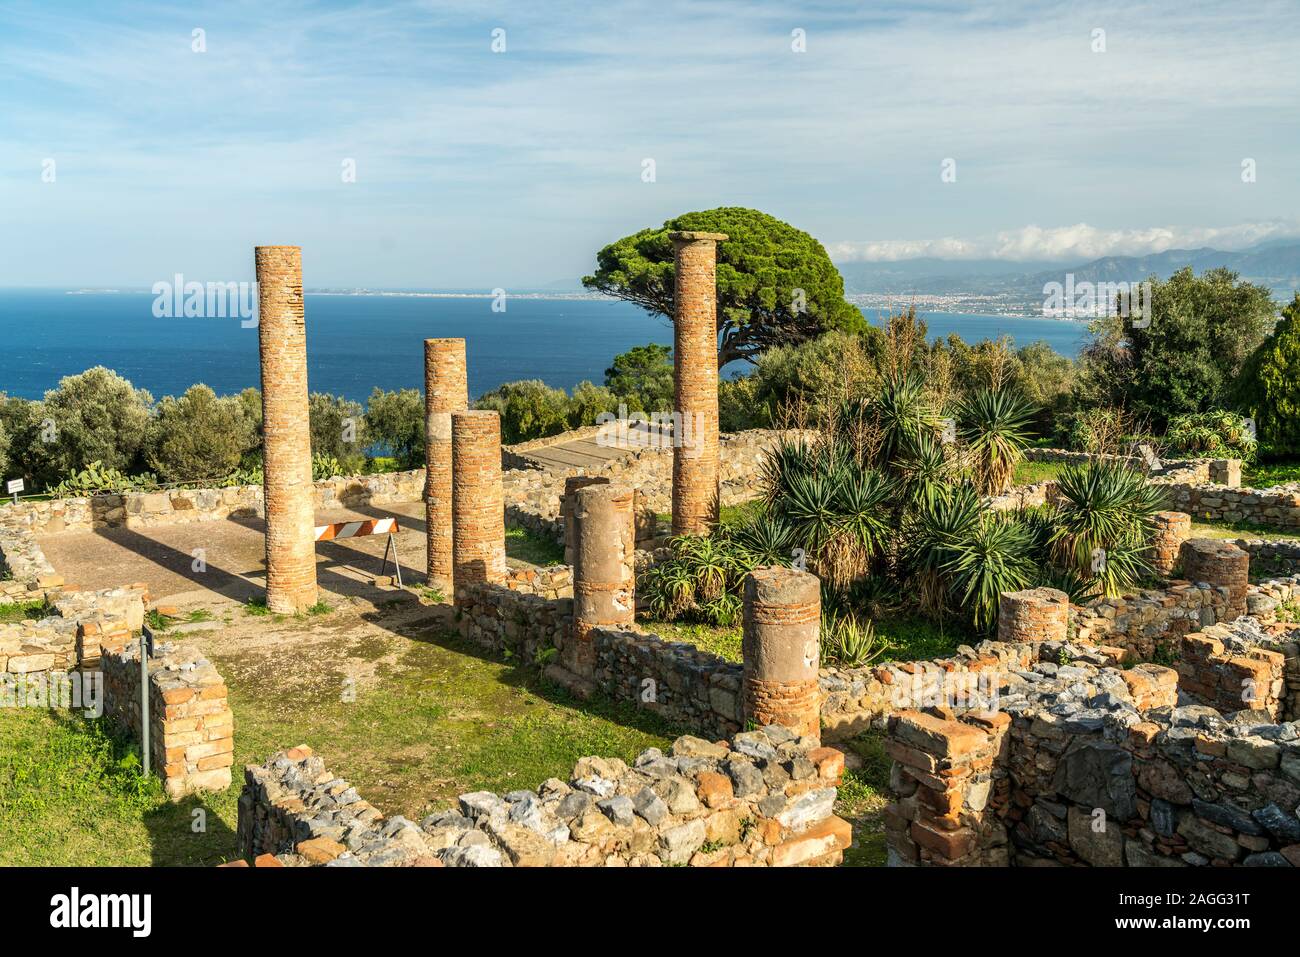 Säulen eines römischen Patrizierhaus in Tindari, Patti,  Sizilien, Italien, Europa  |  Columns of a Roman residential building, Tindari, Patti, Sicily Stock Photo